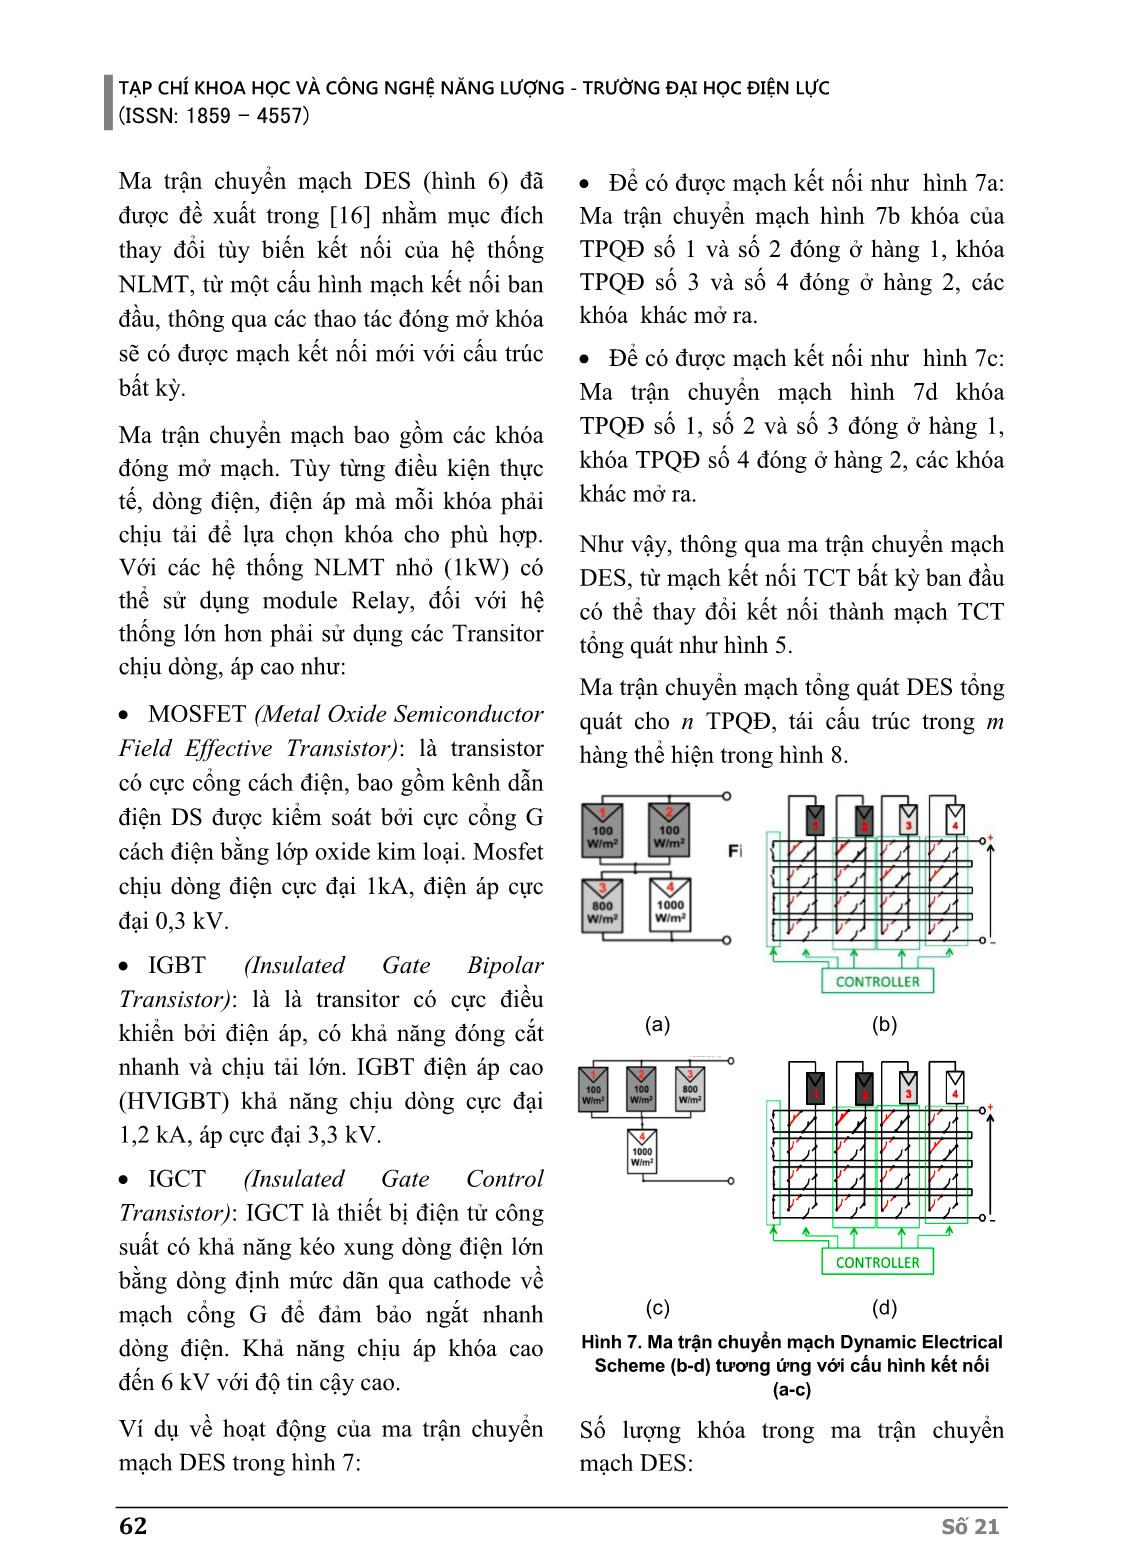 Phương pháp tối ưu ma trận chuyển mạch trong chiến lược tái cấu trúc kết nối các tấm pin quang điện trang 5